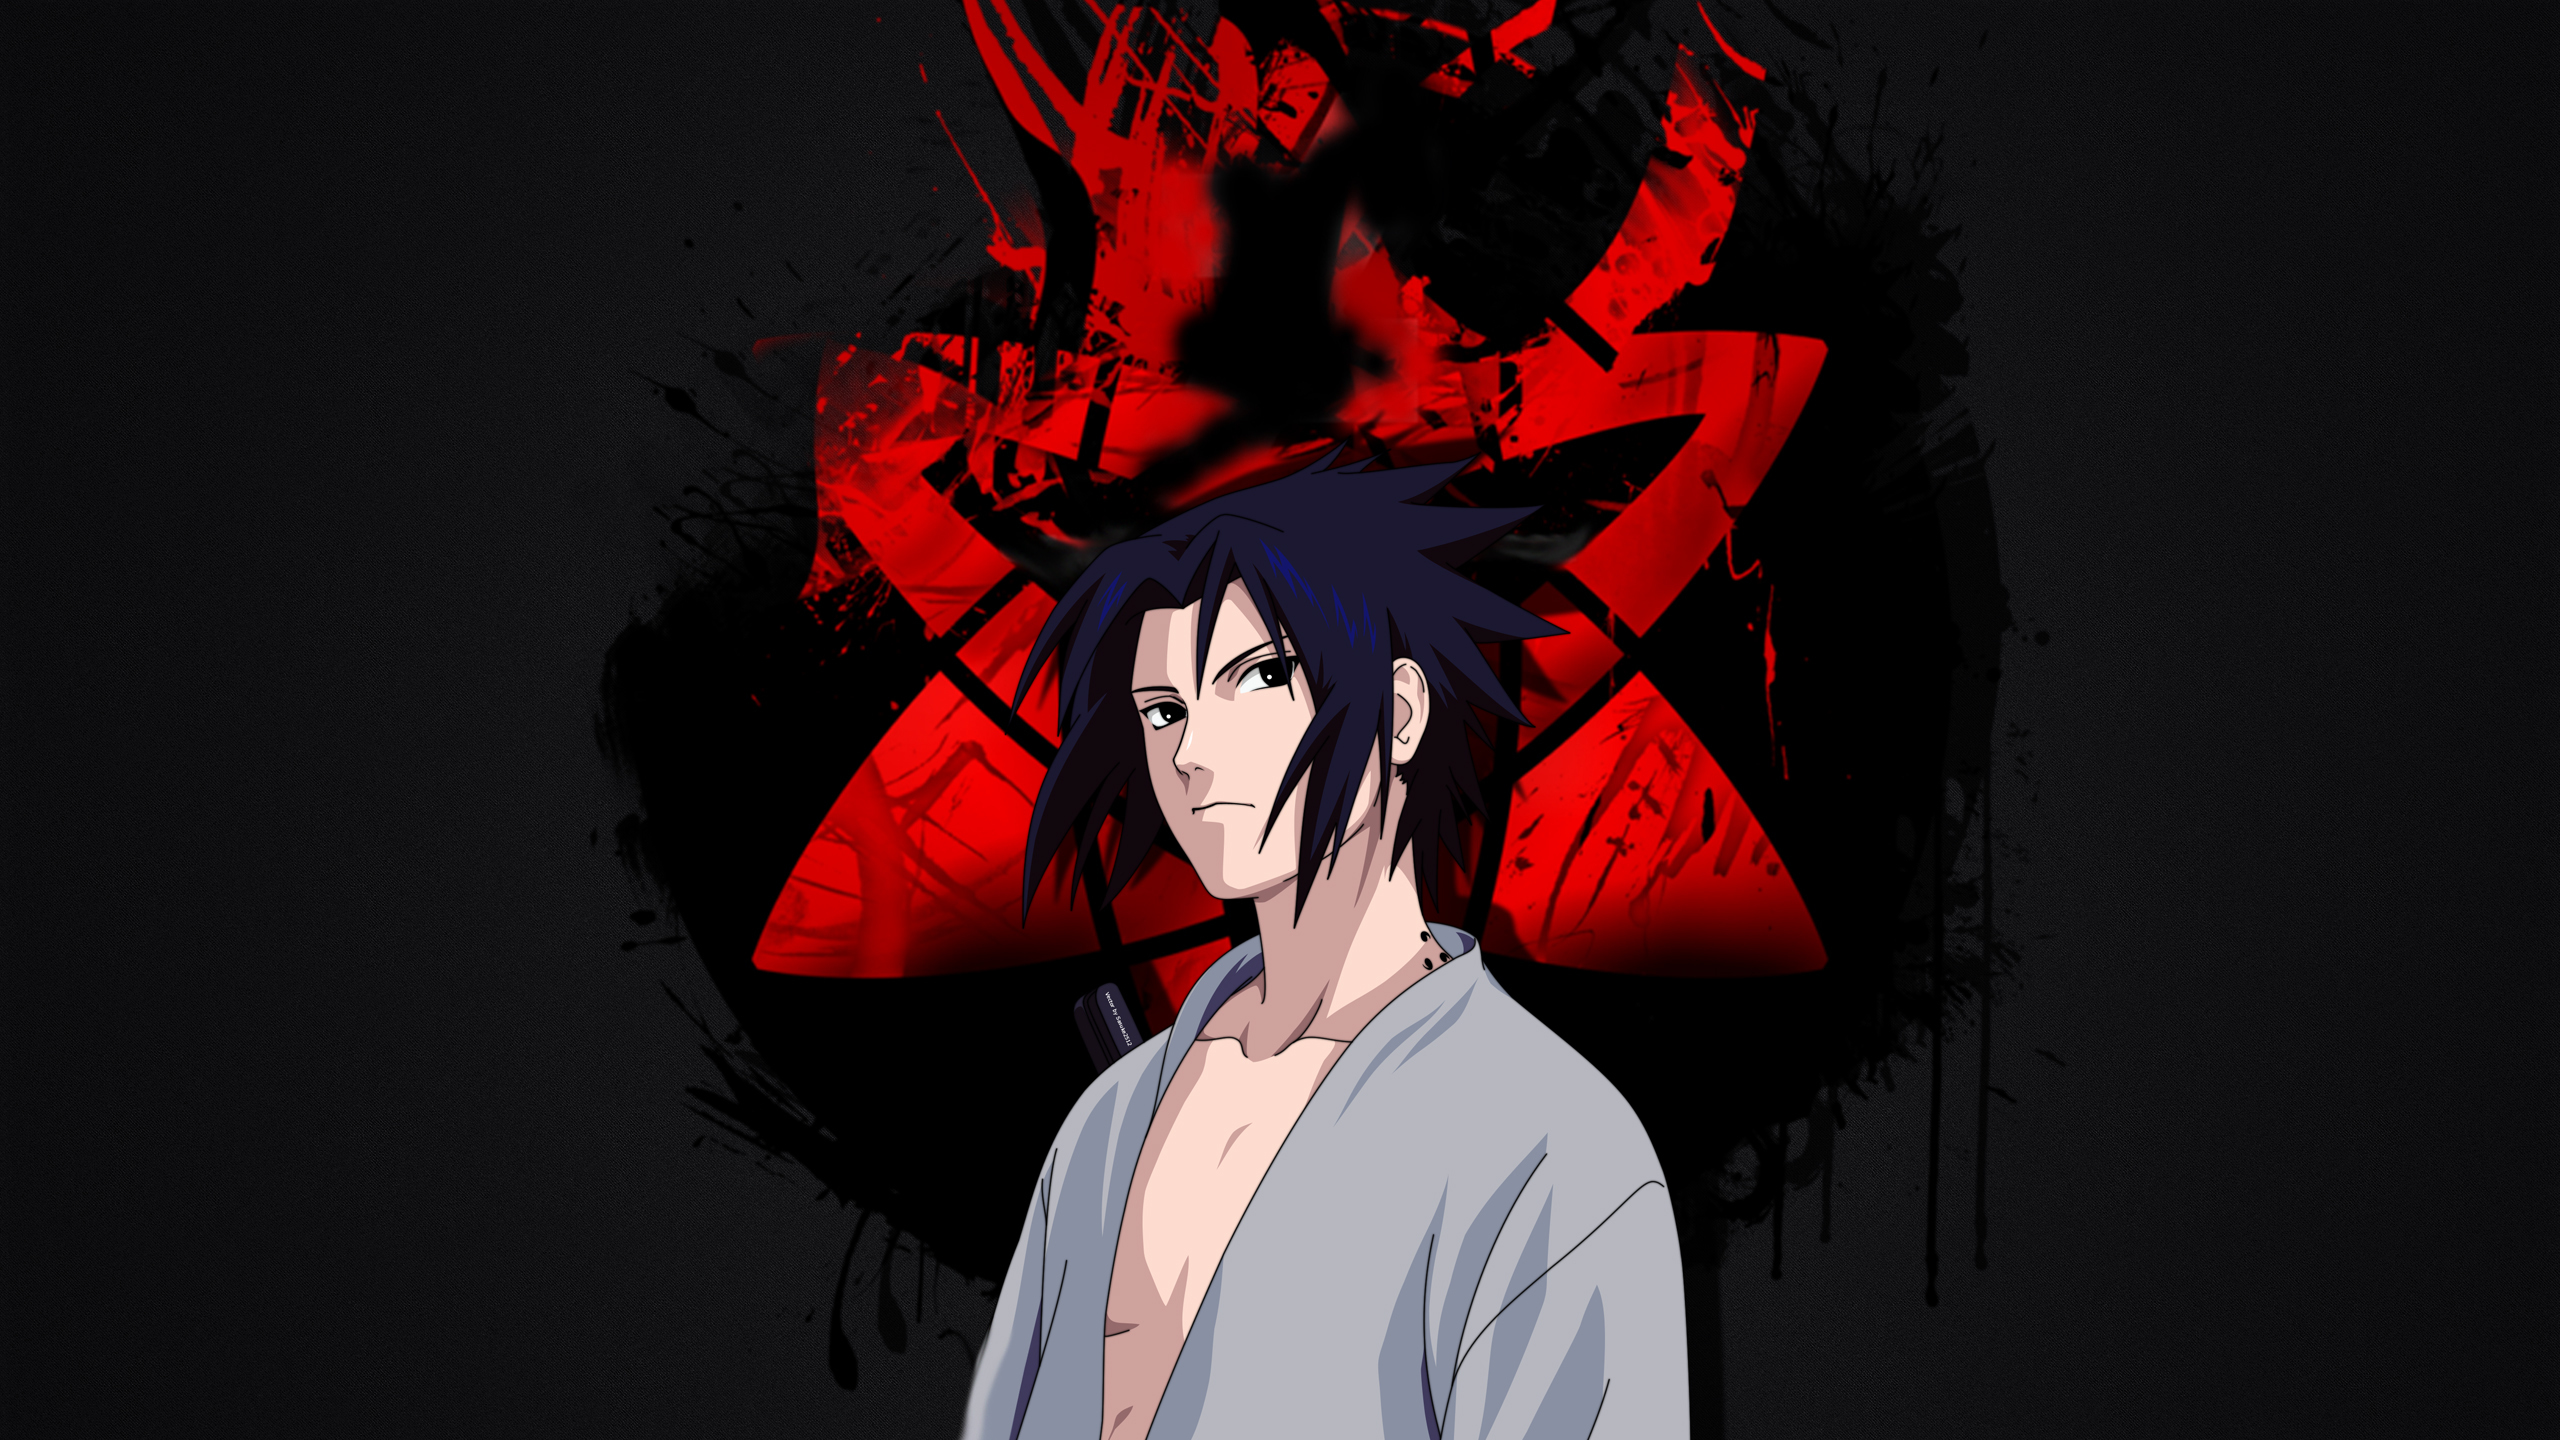 Sasuke Uchiha 1440P Resolution Wallpaper, HD Anime 4K